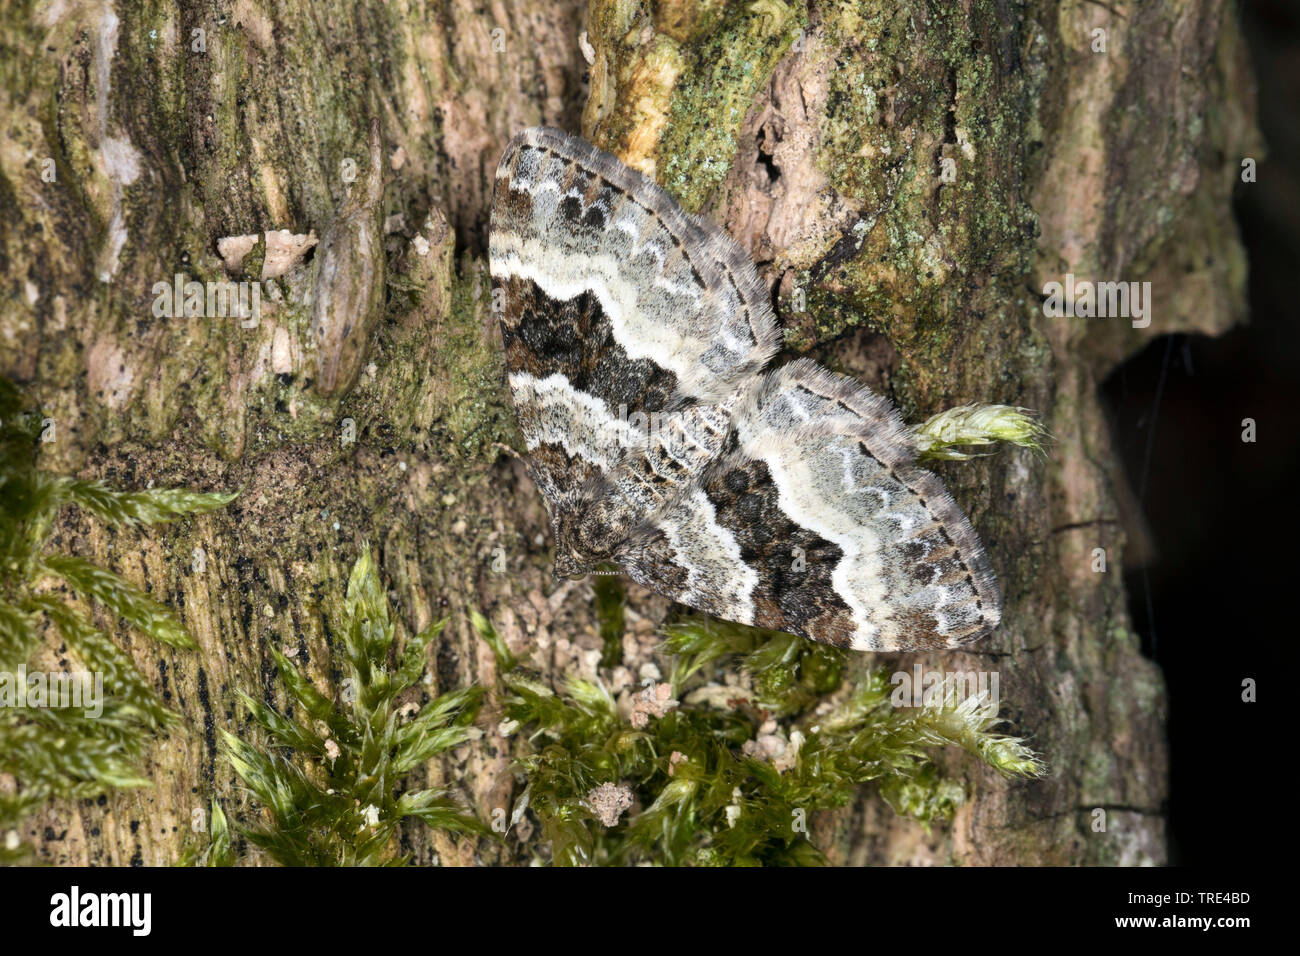 Gemeinsame Teppich, weiß gebändert Zahnriemen Teppich (Epirrhoe alternata), auf moosigen Baum, Deutschland Stockfoto